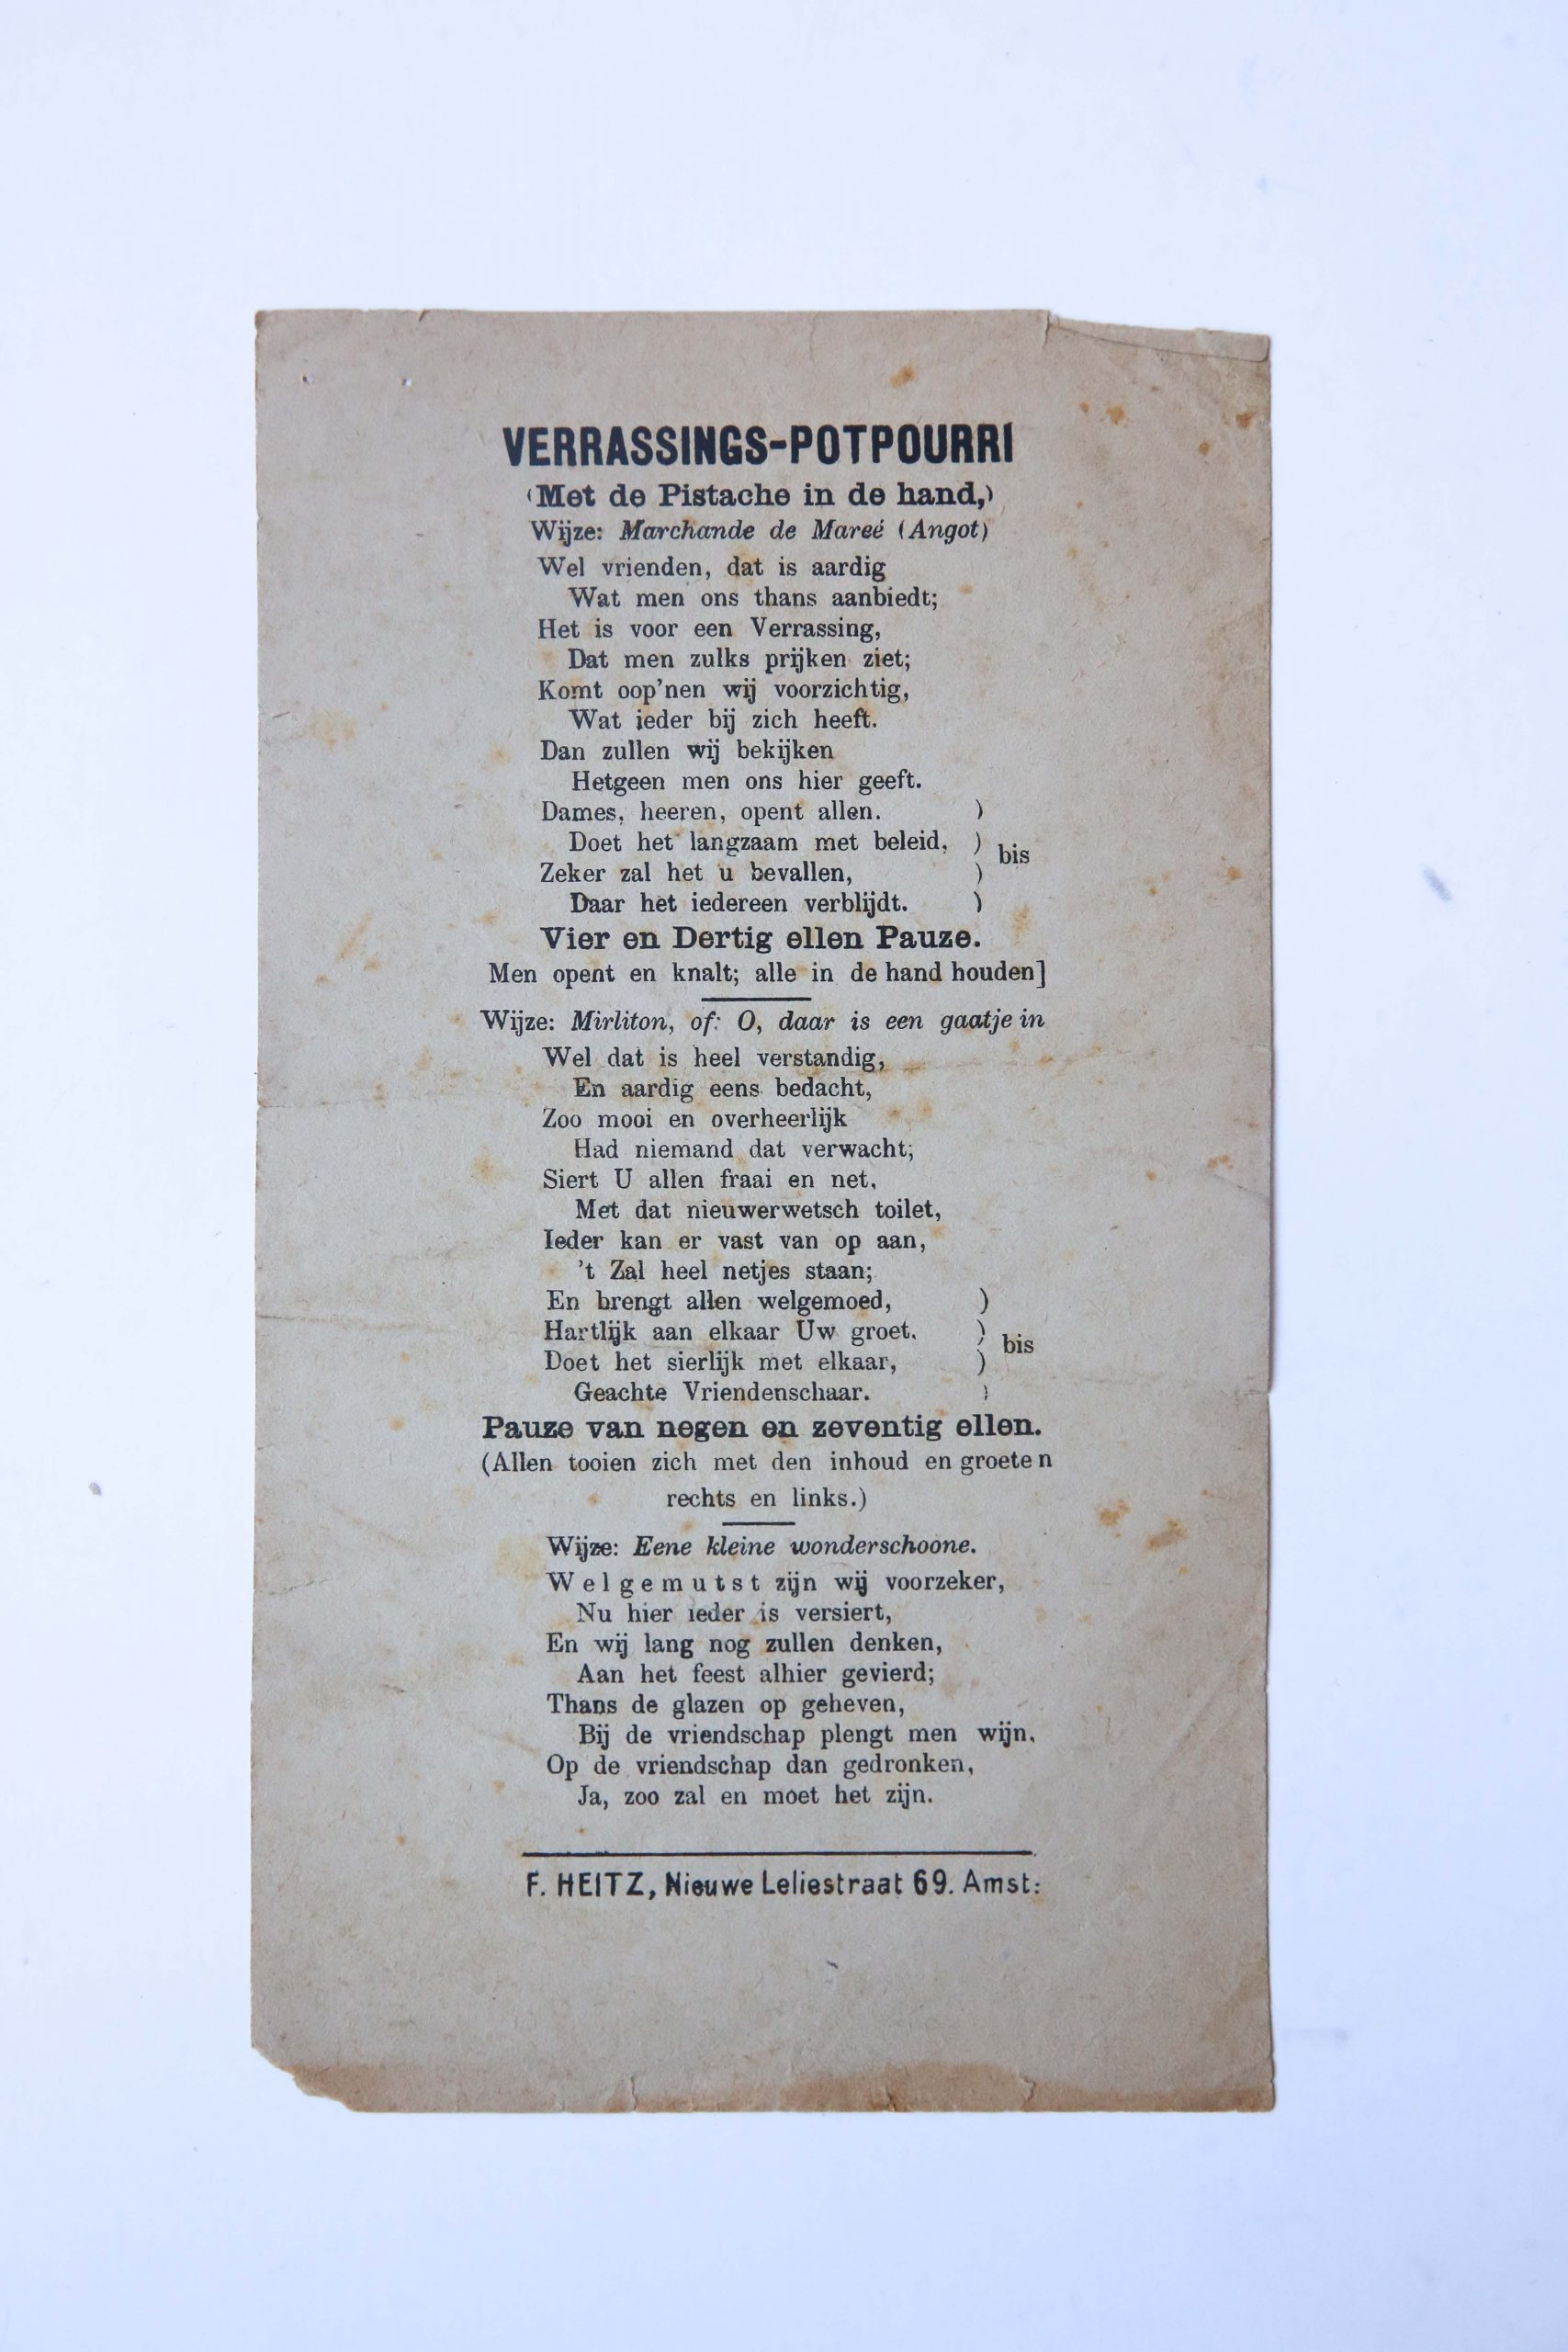 "Verrassings-potpourri", 8º. Heitz, F., Nw Leliestraat 69, Amsterdam.